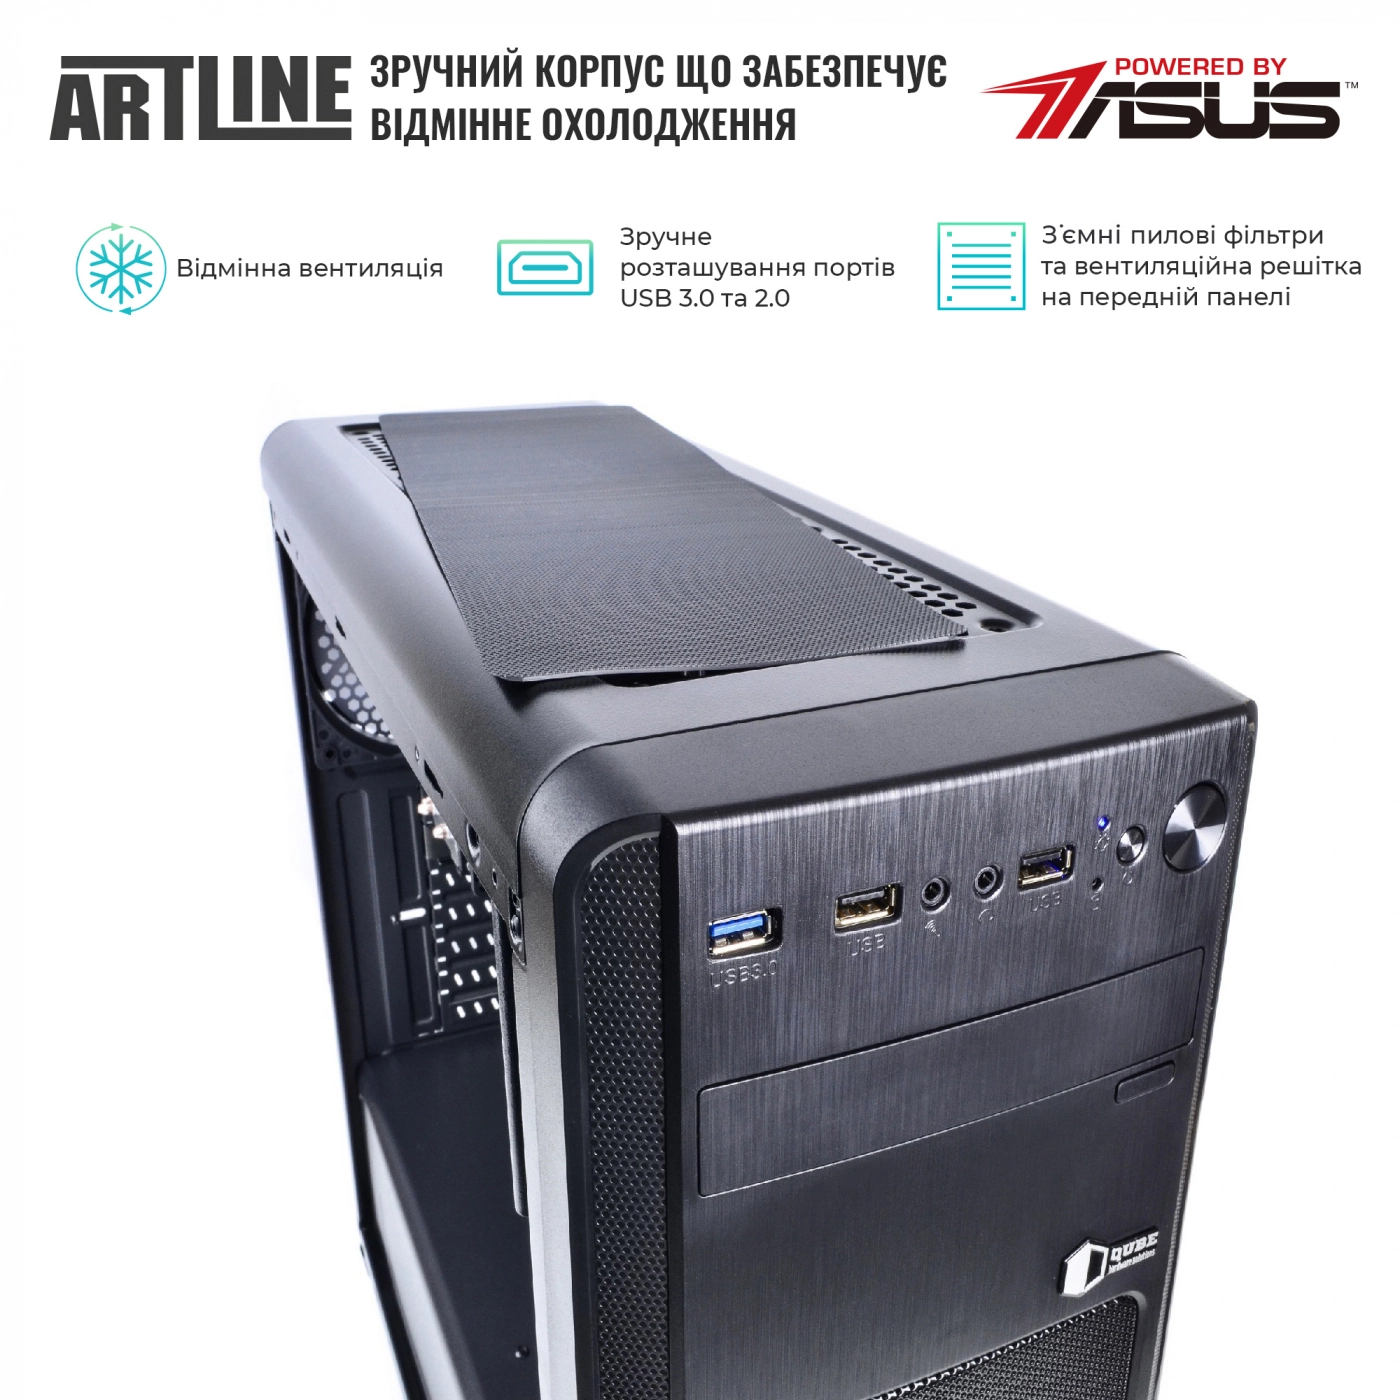 Купить Сервер ARTLINE Business T25v30 - фото 2